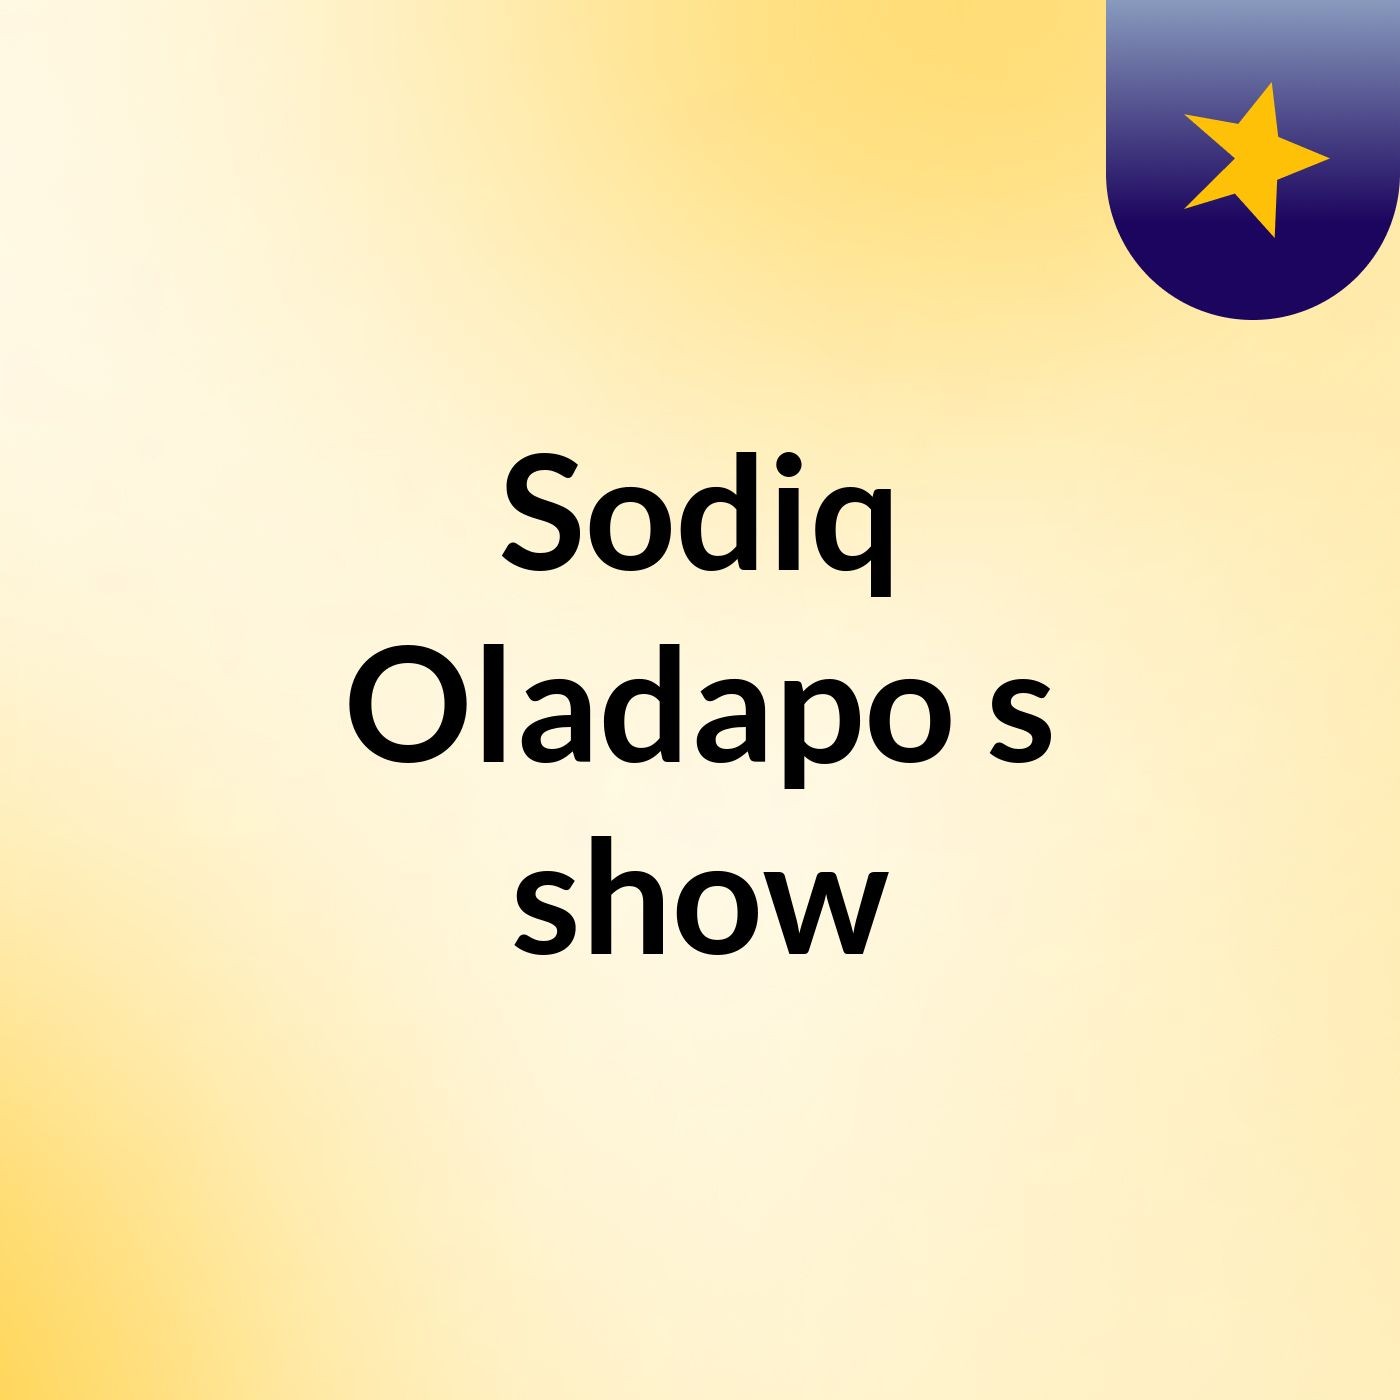 Sodiq Oladapo's show